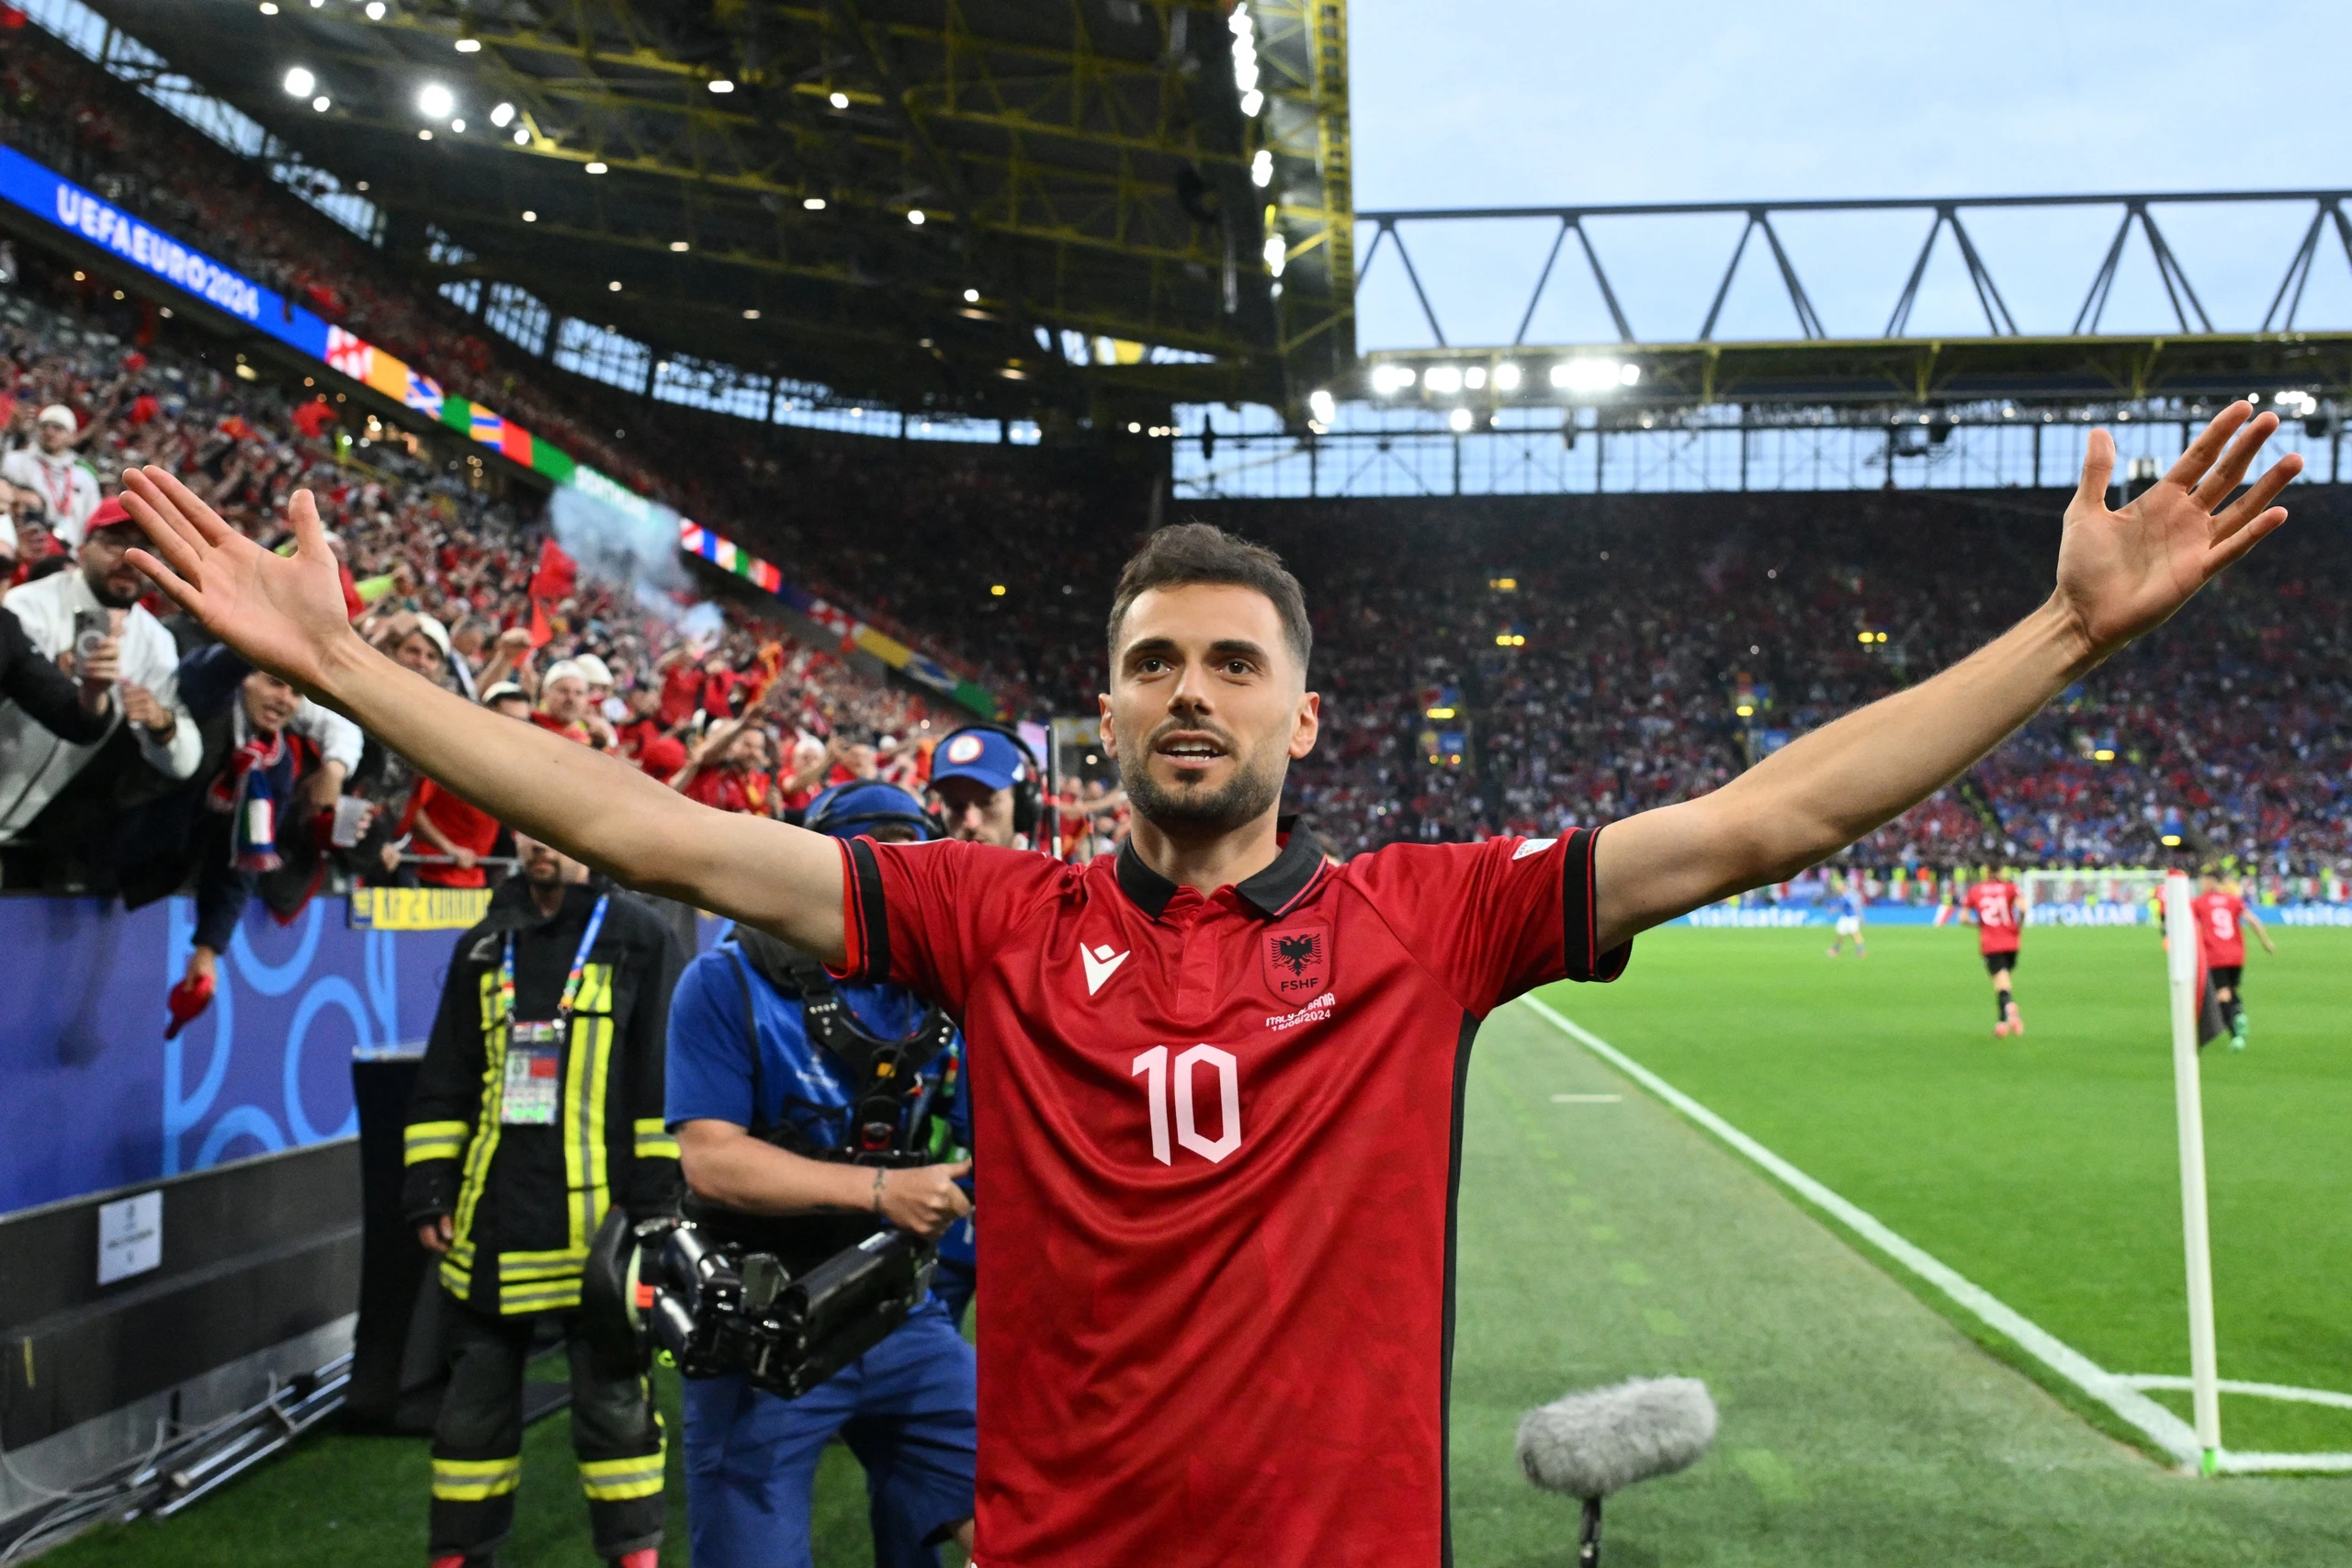 Ghi bàn nhanh nhất lịch sử EURO, Albania vẫn thua ngược đương kim vô địch Ý